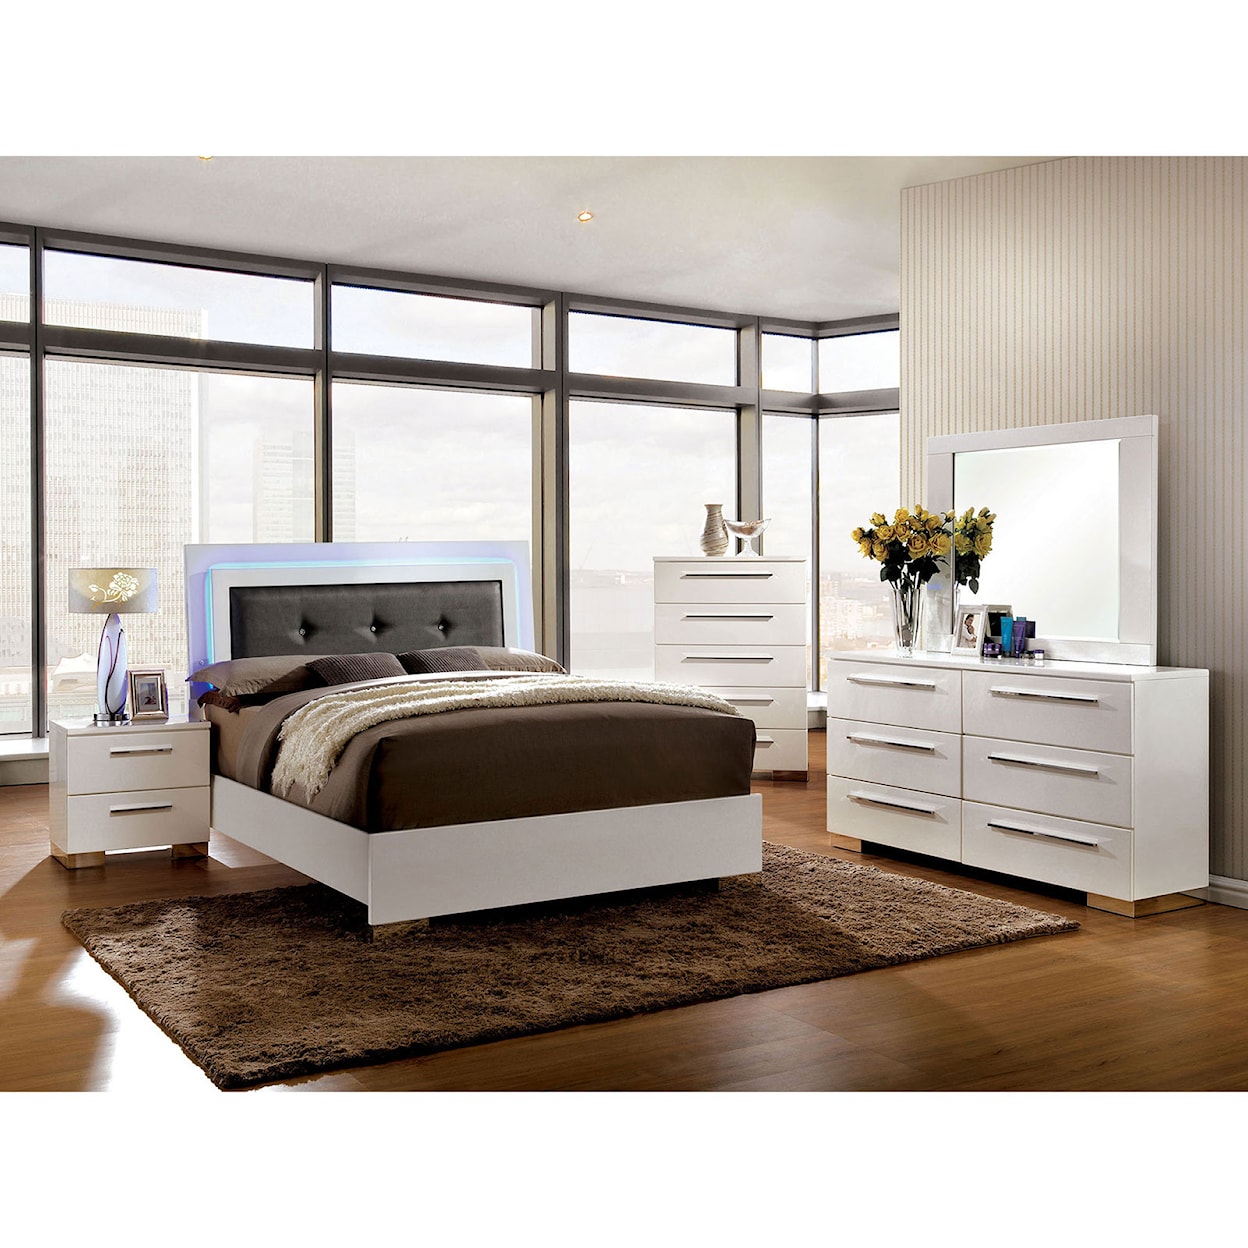 Furniture of America Clementine Queen Bedroom Set